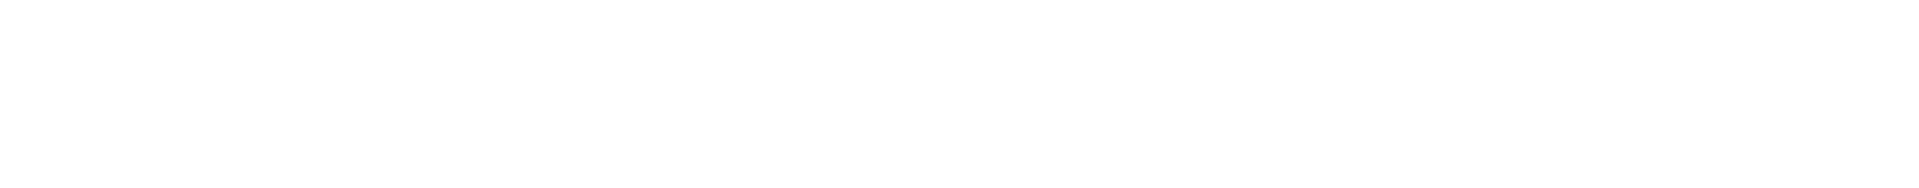 21周年を迎えた王道RPG『ラグナロクオンライン』で20年以上公式コスプレイヤーを務め続ける゛よきゅーん”が、なんと最長期間のギネス世界記録™に認定されました！